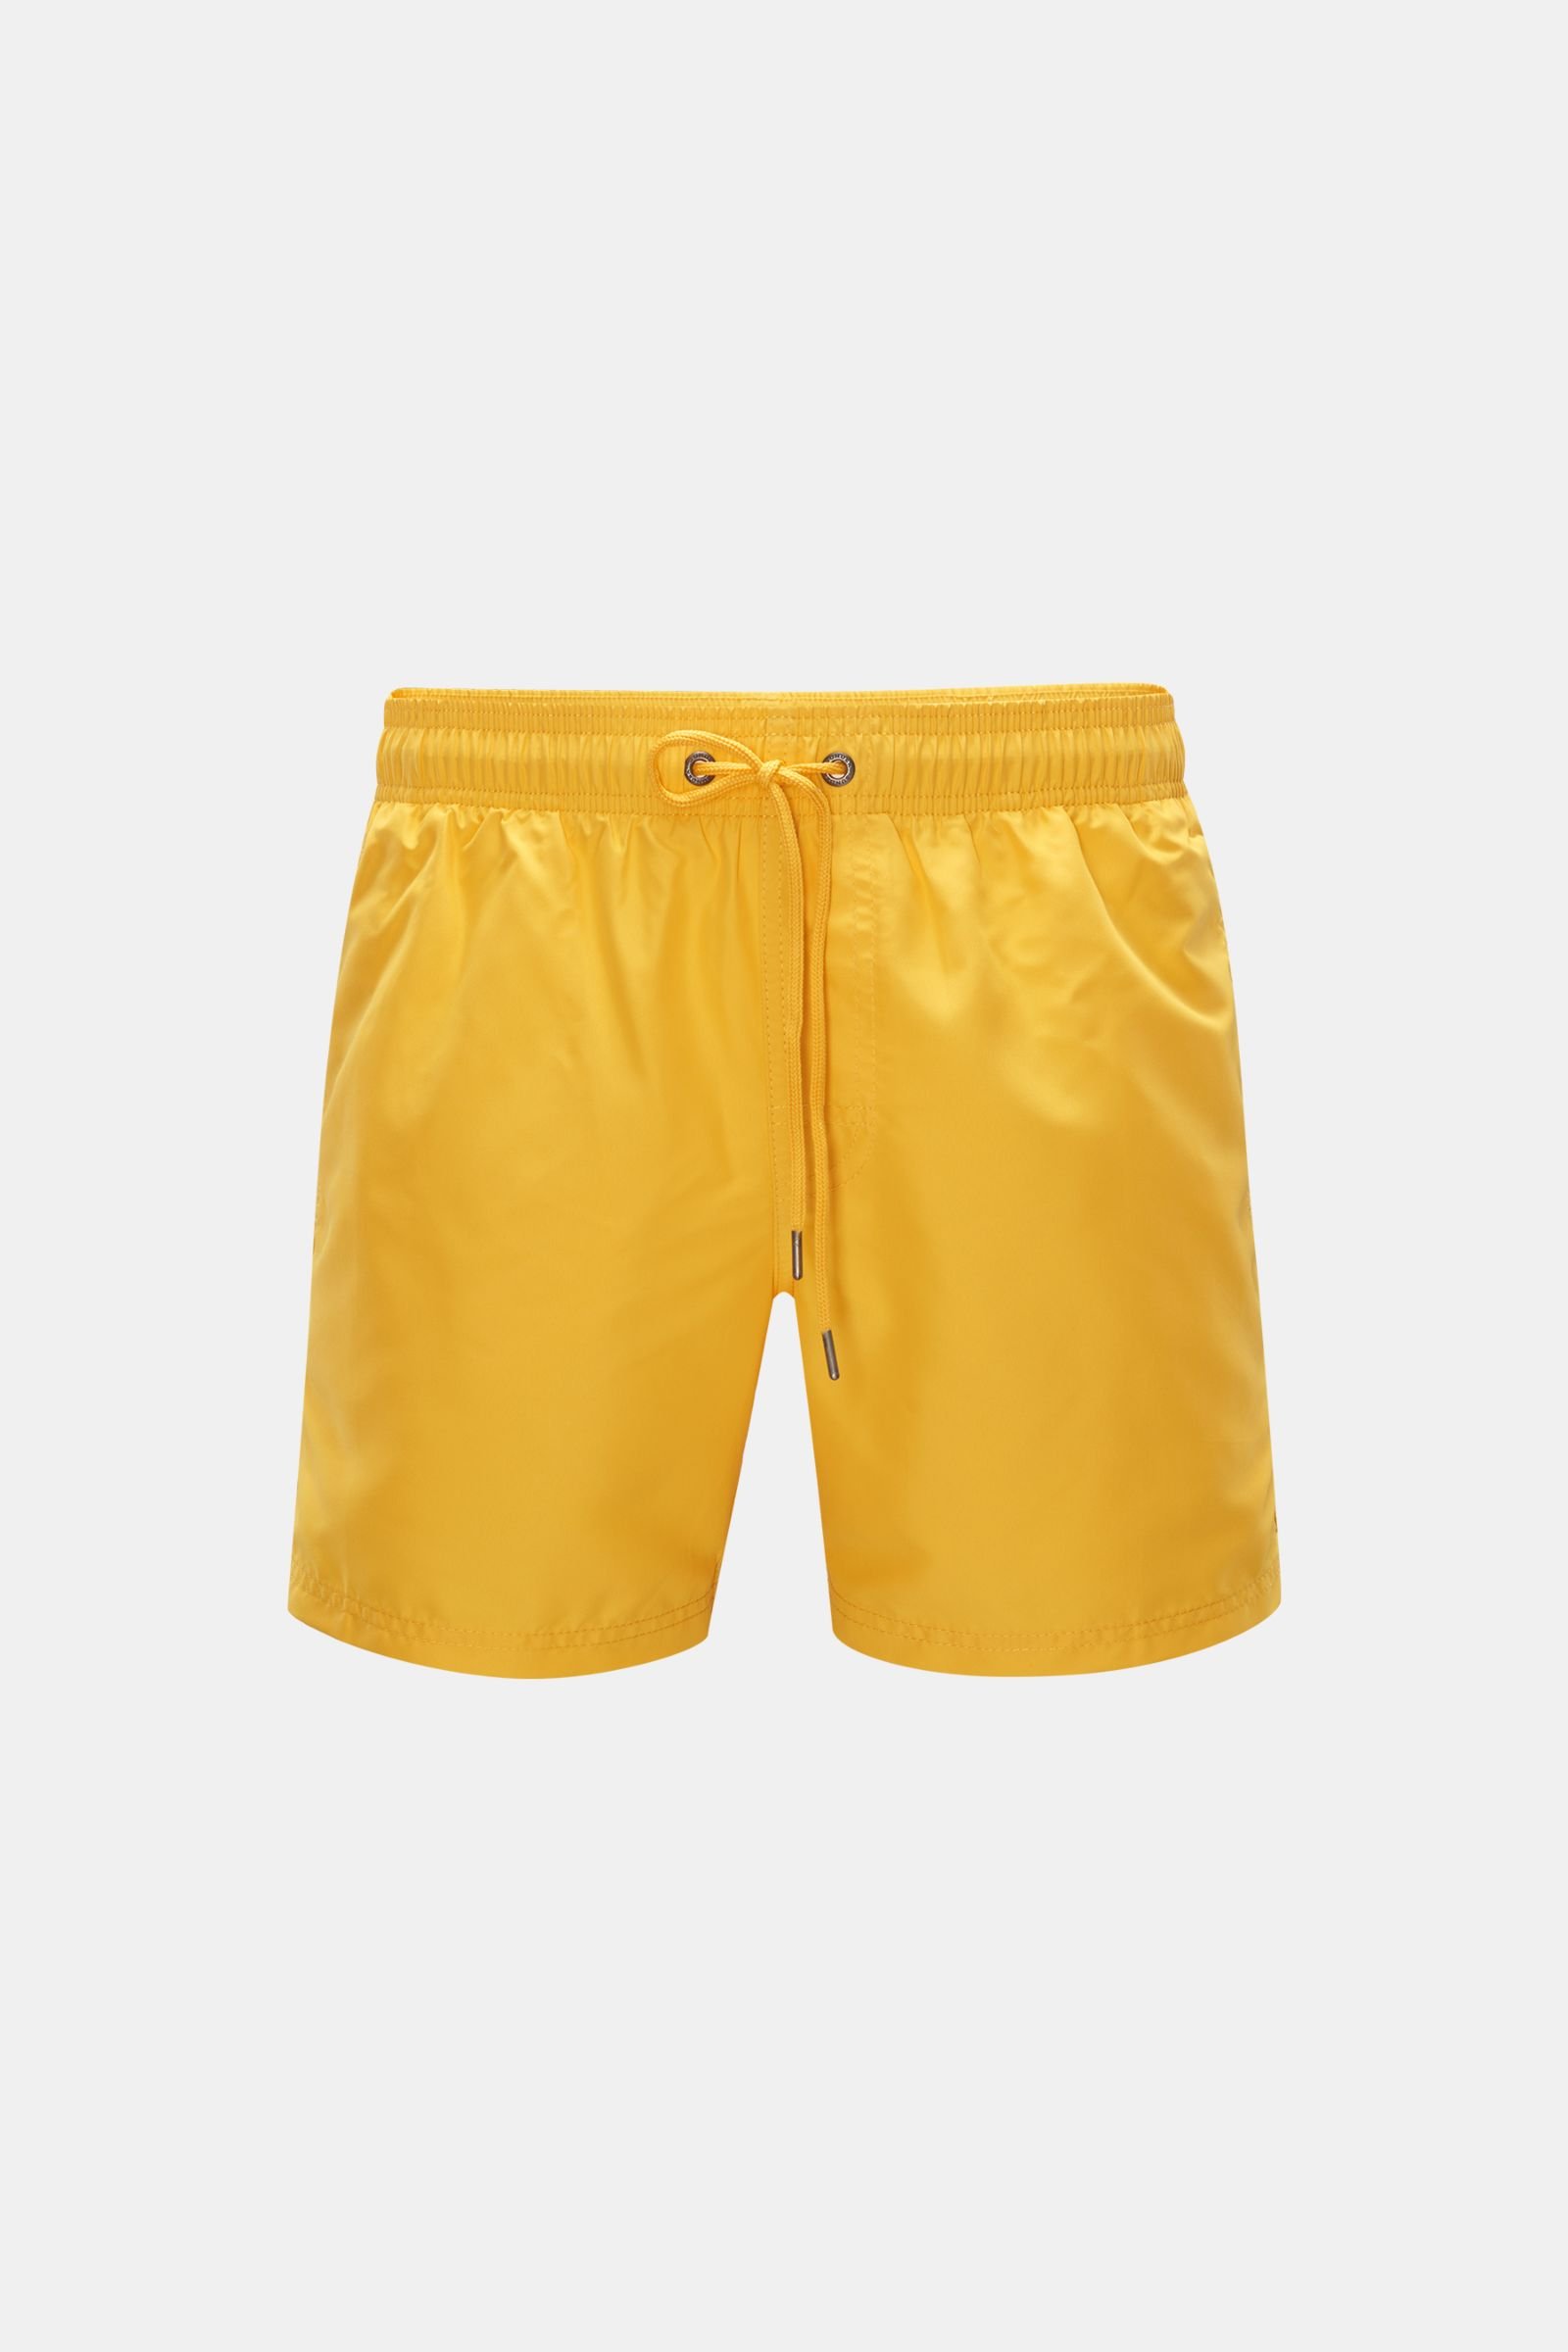 Swim shorts yellow